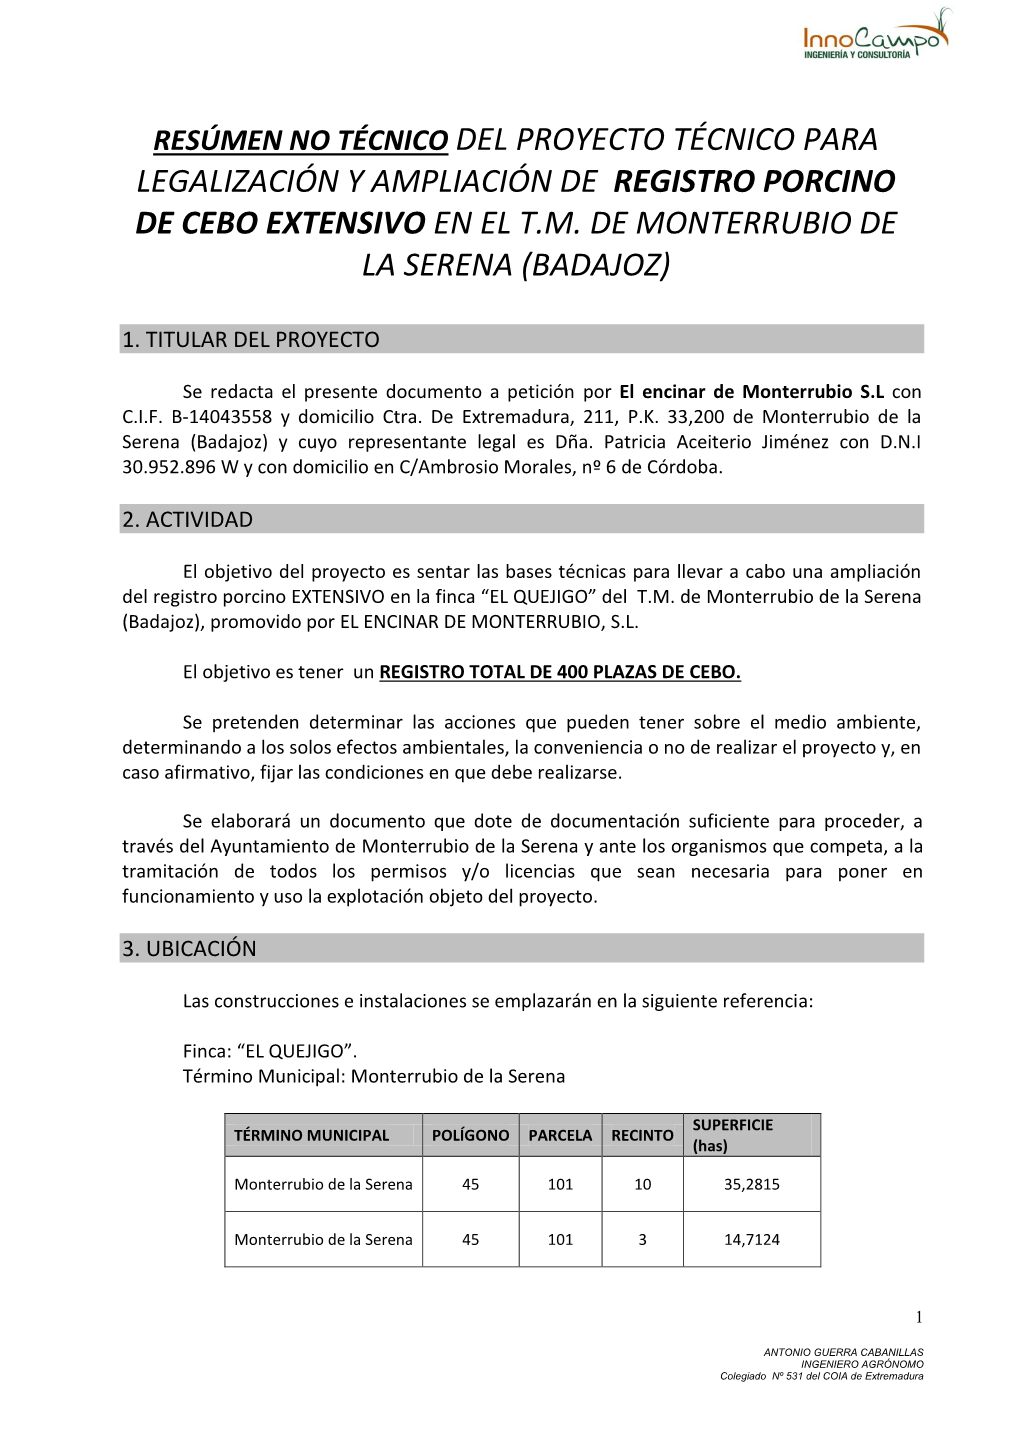 Resúmen No Técnico Del Proyecto Técnico Para Legalización Y Ampliación De Registro Porcino De Cebo Extensivo En El T.M